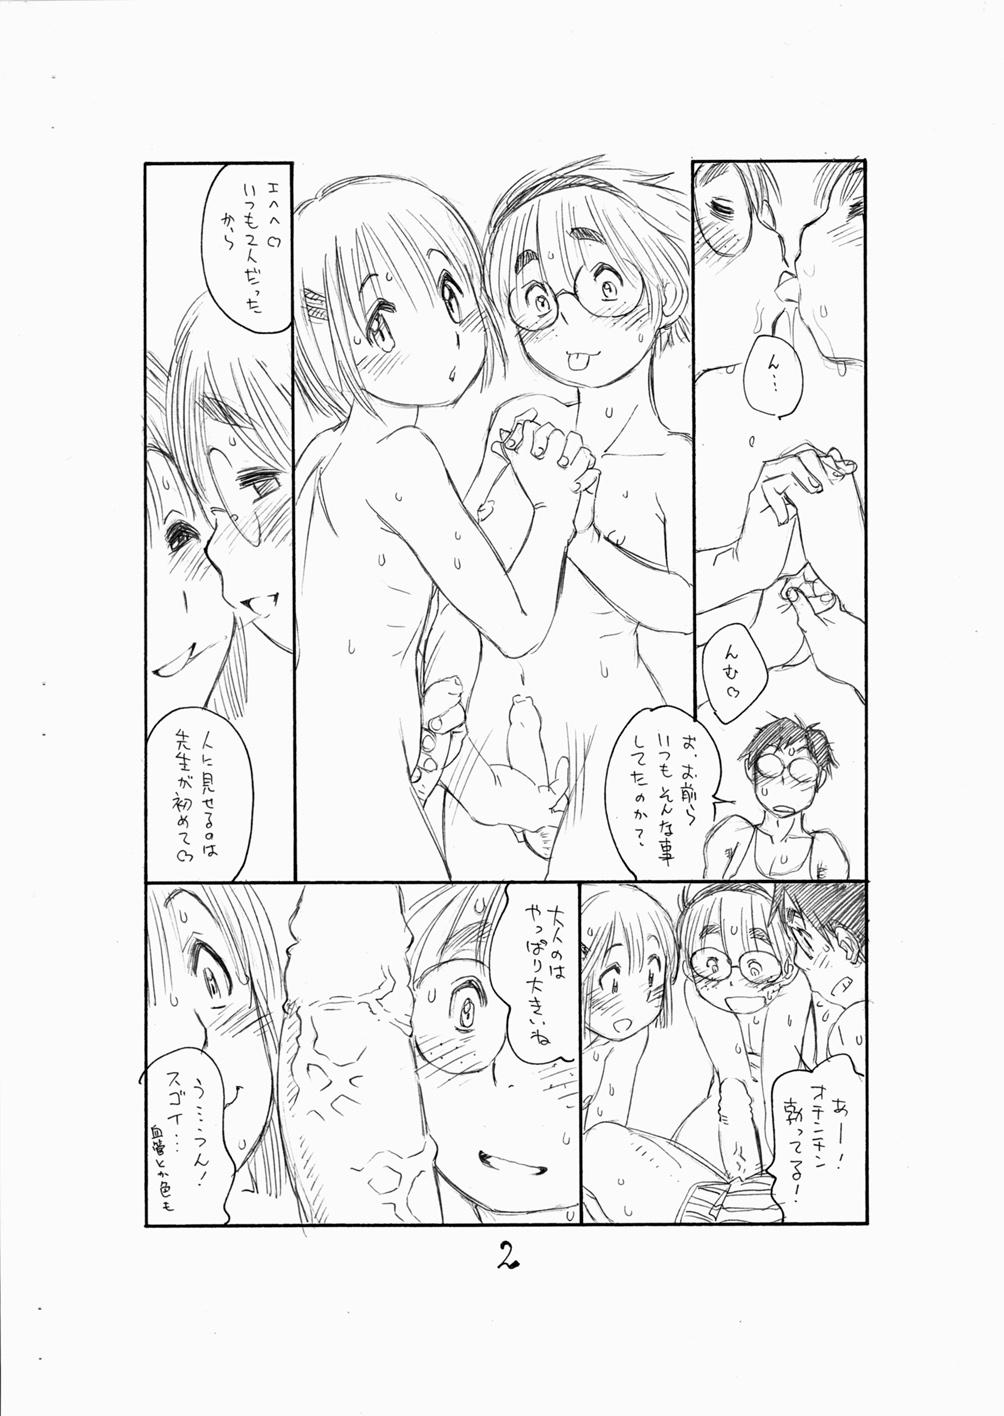 Interacial Bokutachi Otokonoko 3 - Hourou musuko Rough - Page 4